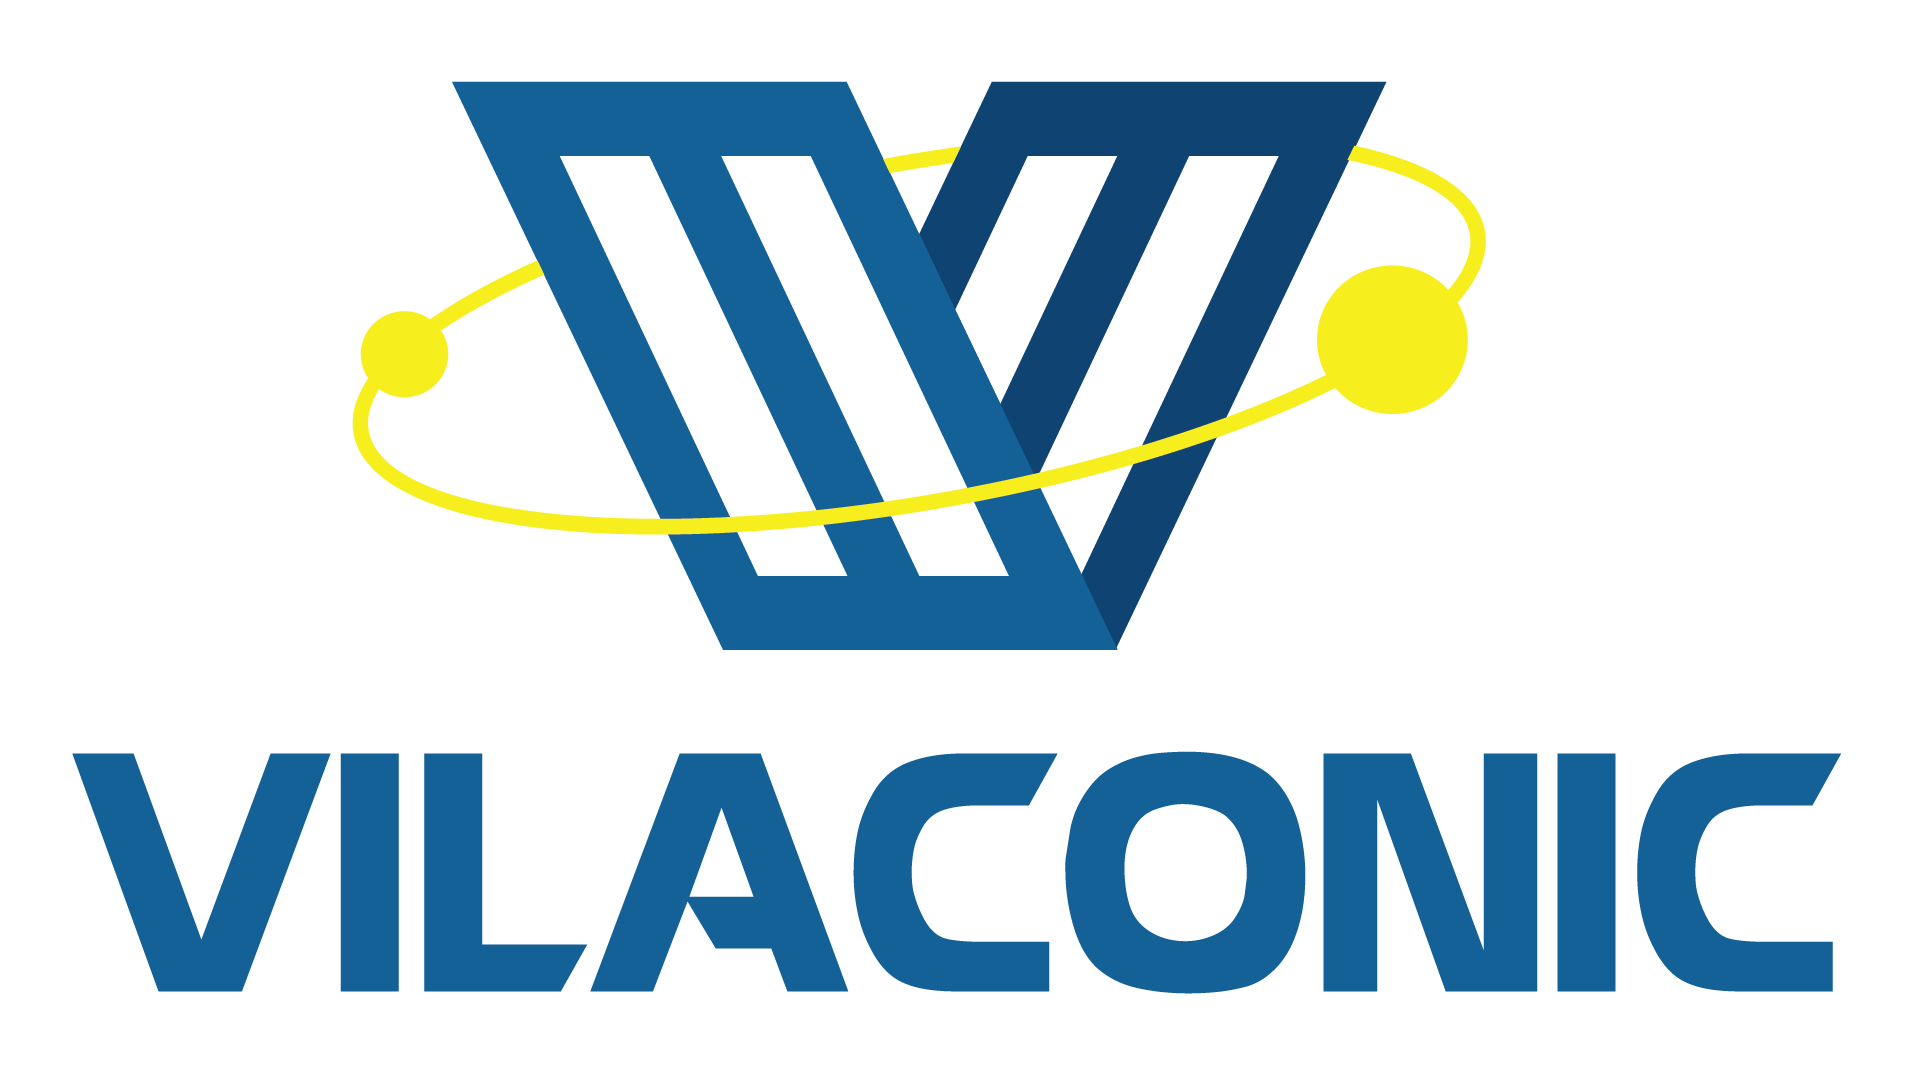 Vilaconic Joint Stock Company